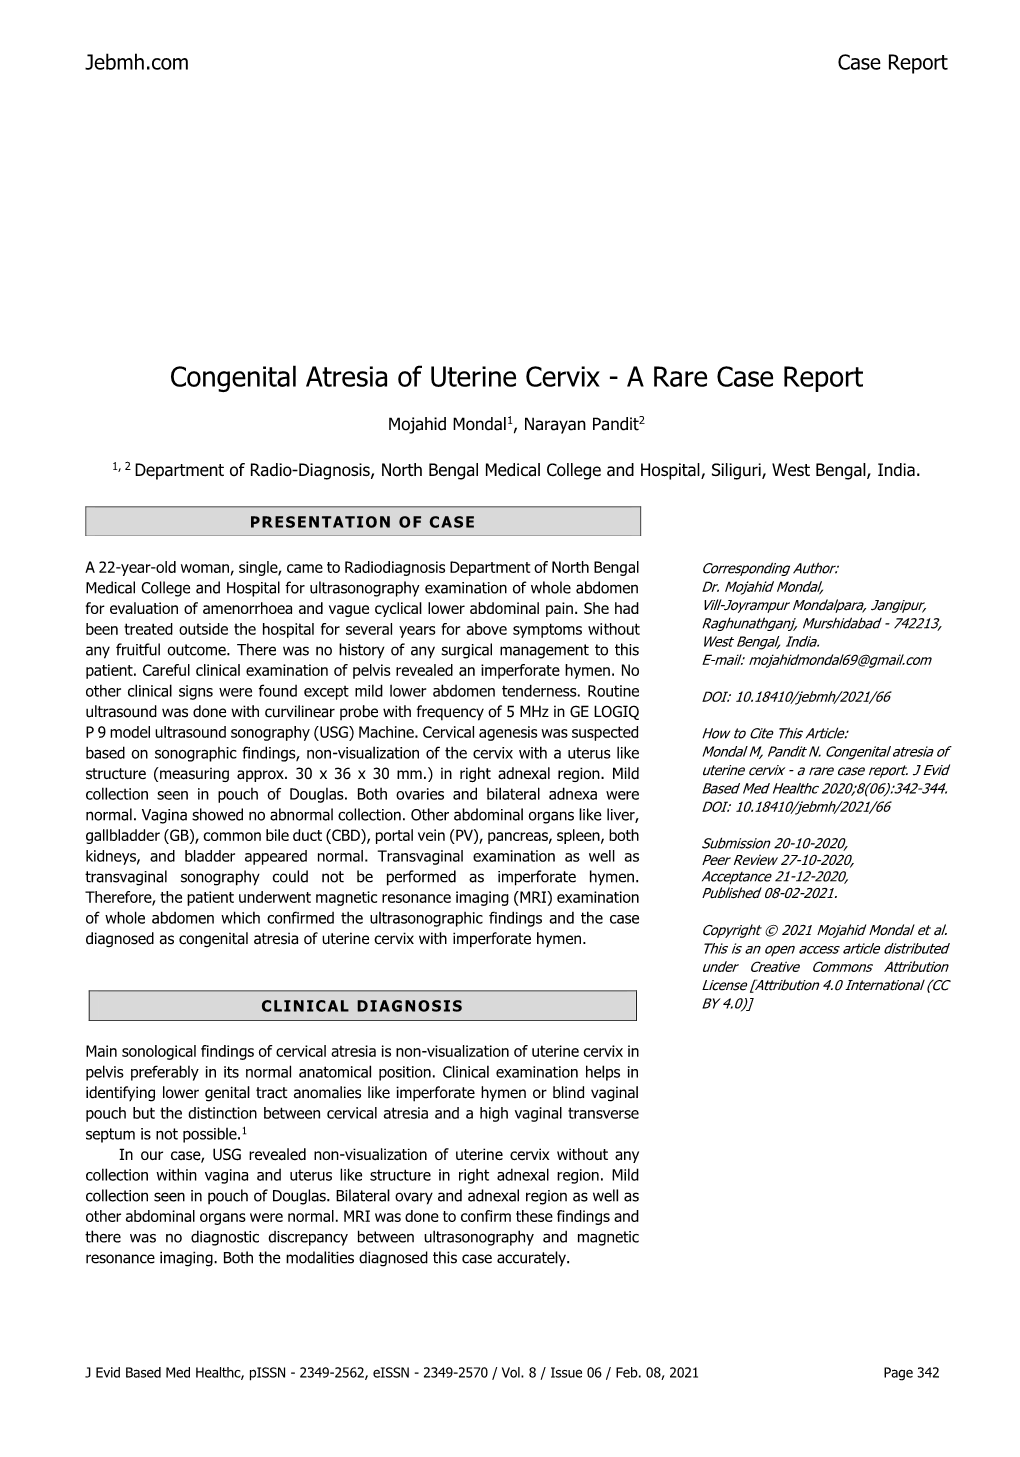 Congenital Atresia of Uterine Cervix - a Rare Case Report